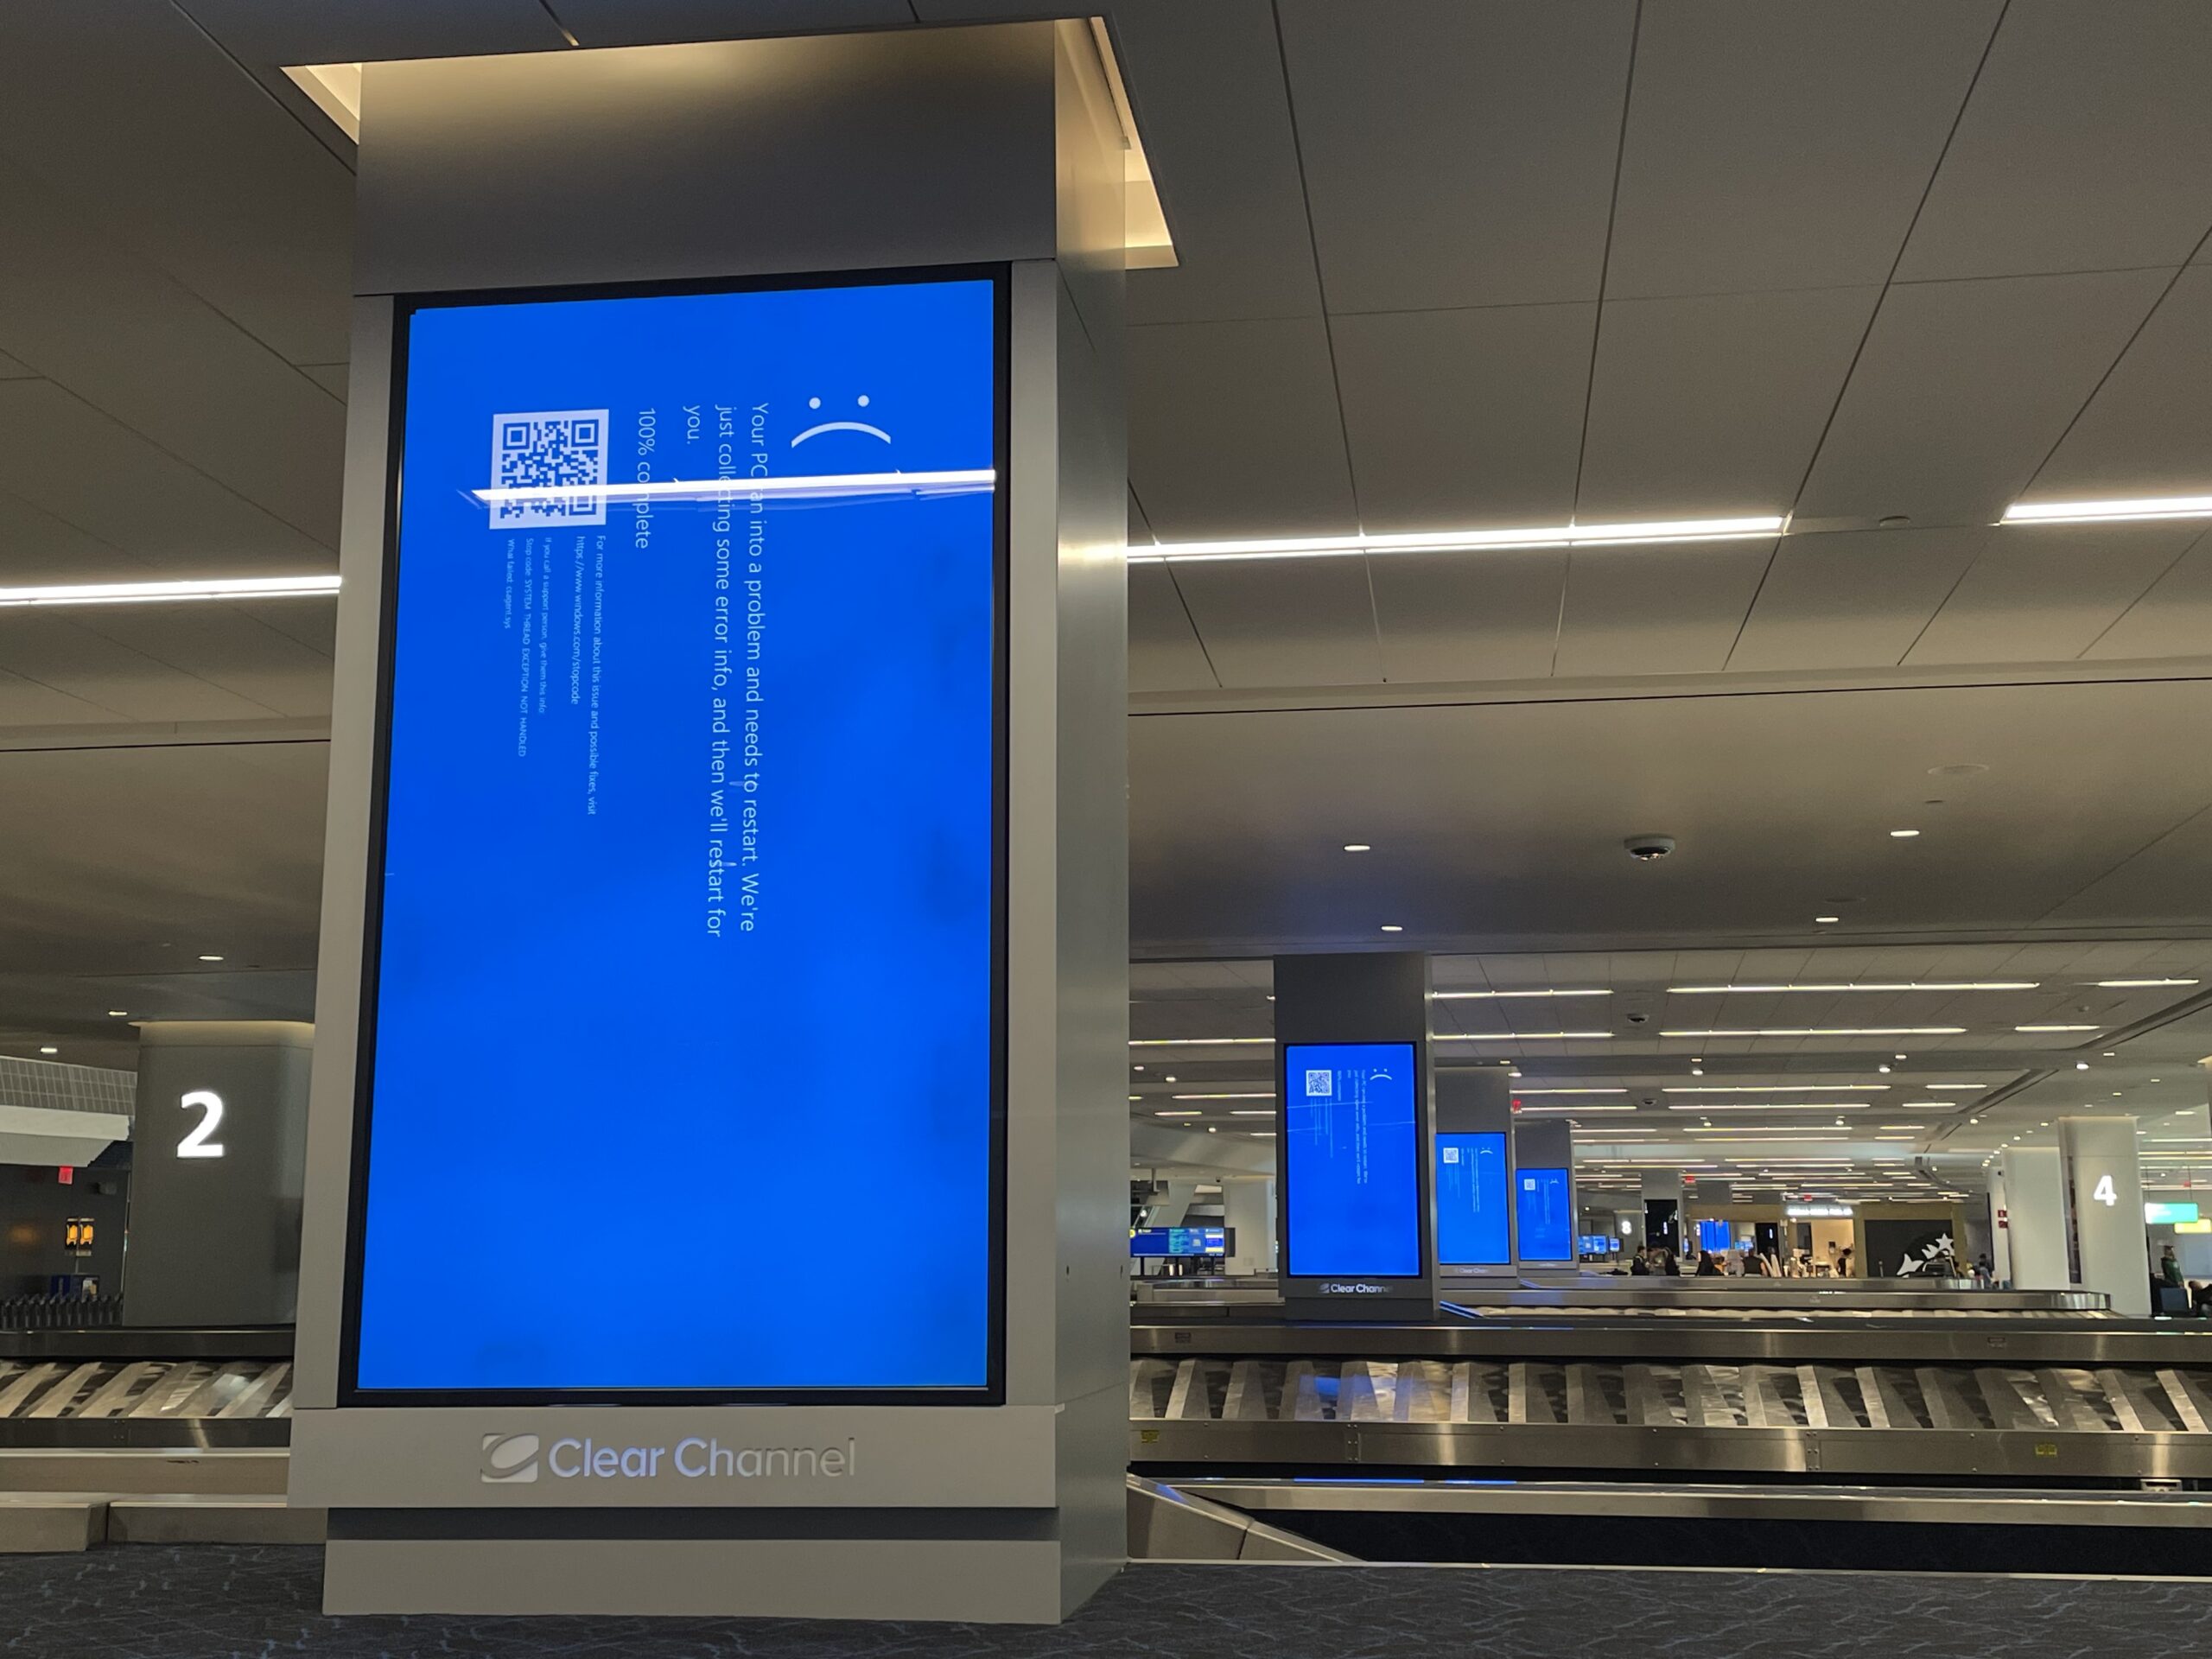 Eine Gepäckhalle in einem Flughafen mit grossen Informationsbildschirmen (hochkant) auf denen um 90 Grad gedreht der BlueScreen von CrowdStrike steht